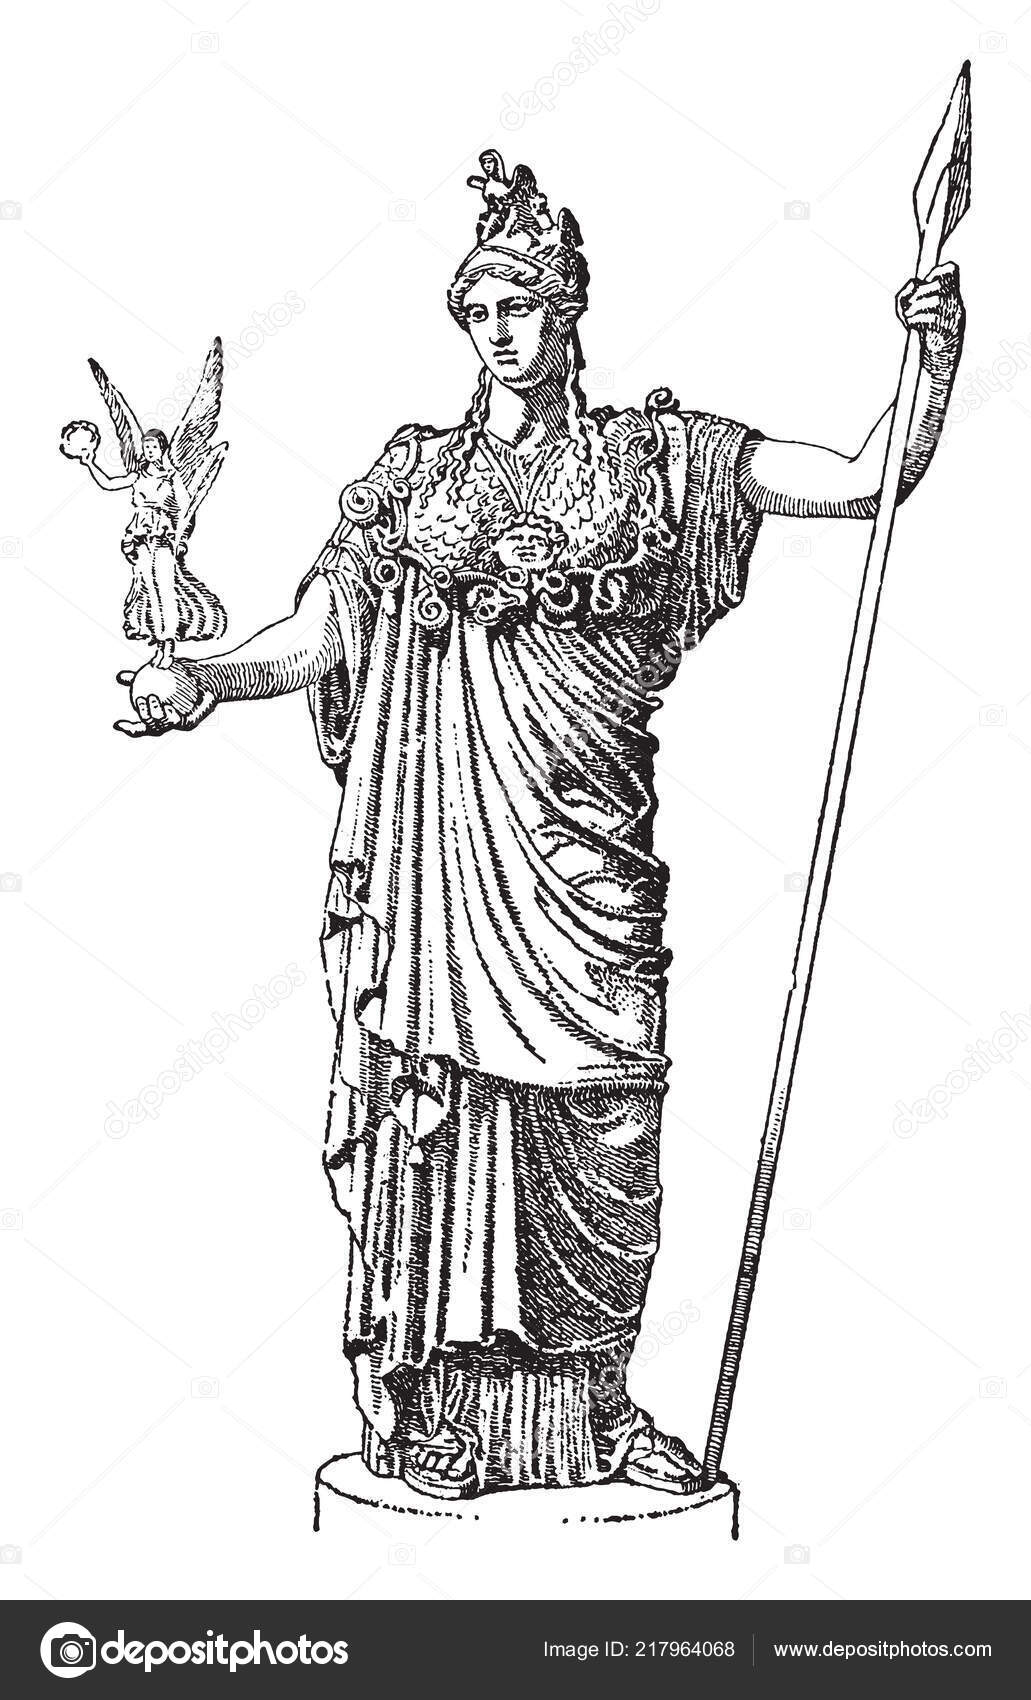 Græsk Gudinde Viser Athena Fed Holde Statue Stock-vektor af ©Morphart 217964068